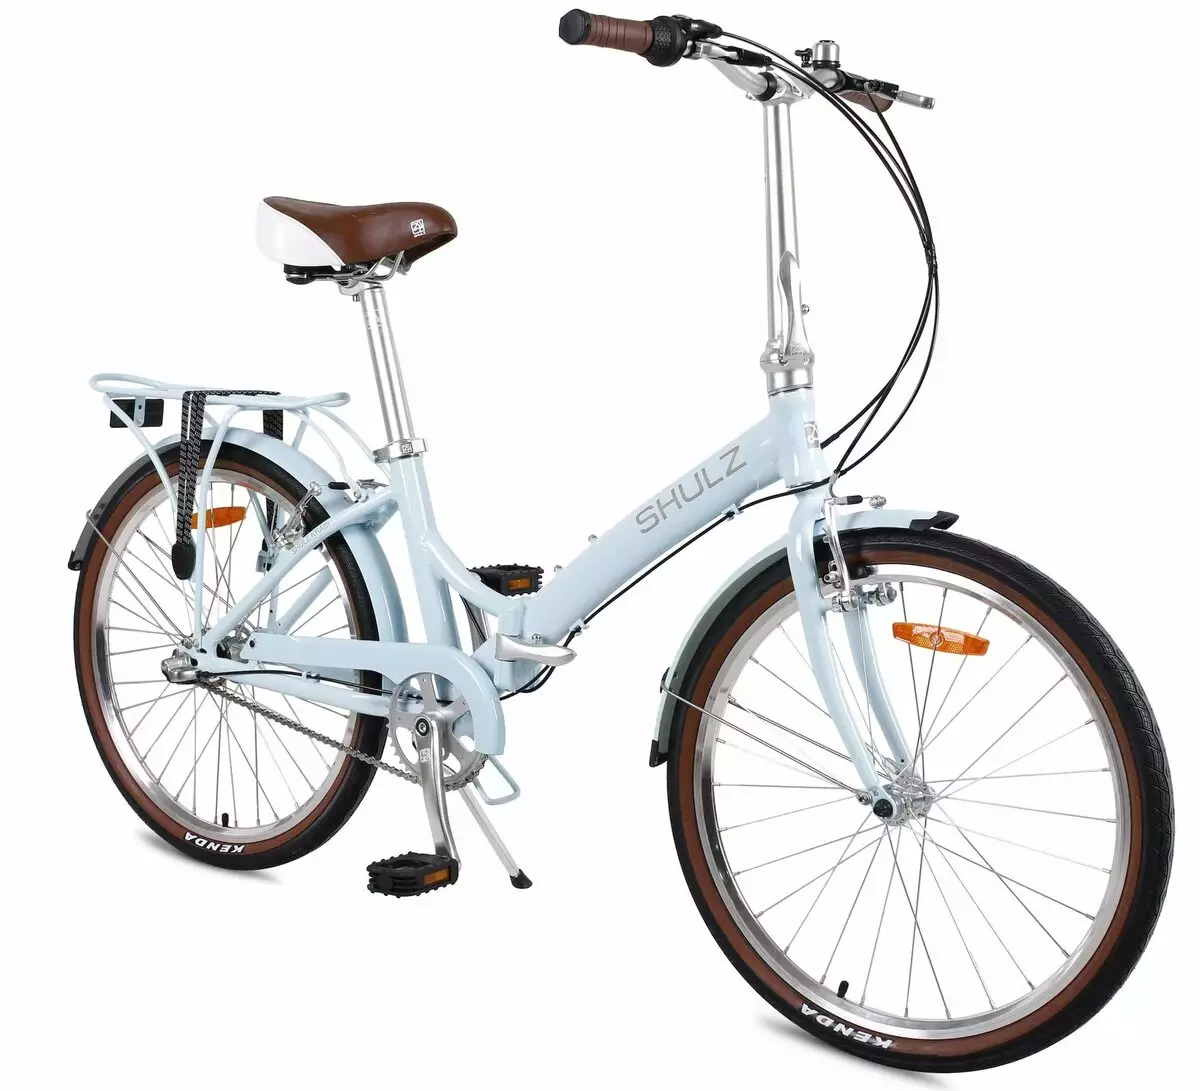 Katlanır Bisiklet Shulz: Krabi Coaster ve Çoklu, Hopper XL ve Kolay, Yetişkinler ve Çocuklar İçin Diğer Modeller 20396_28